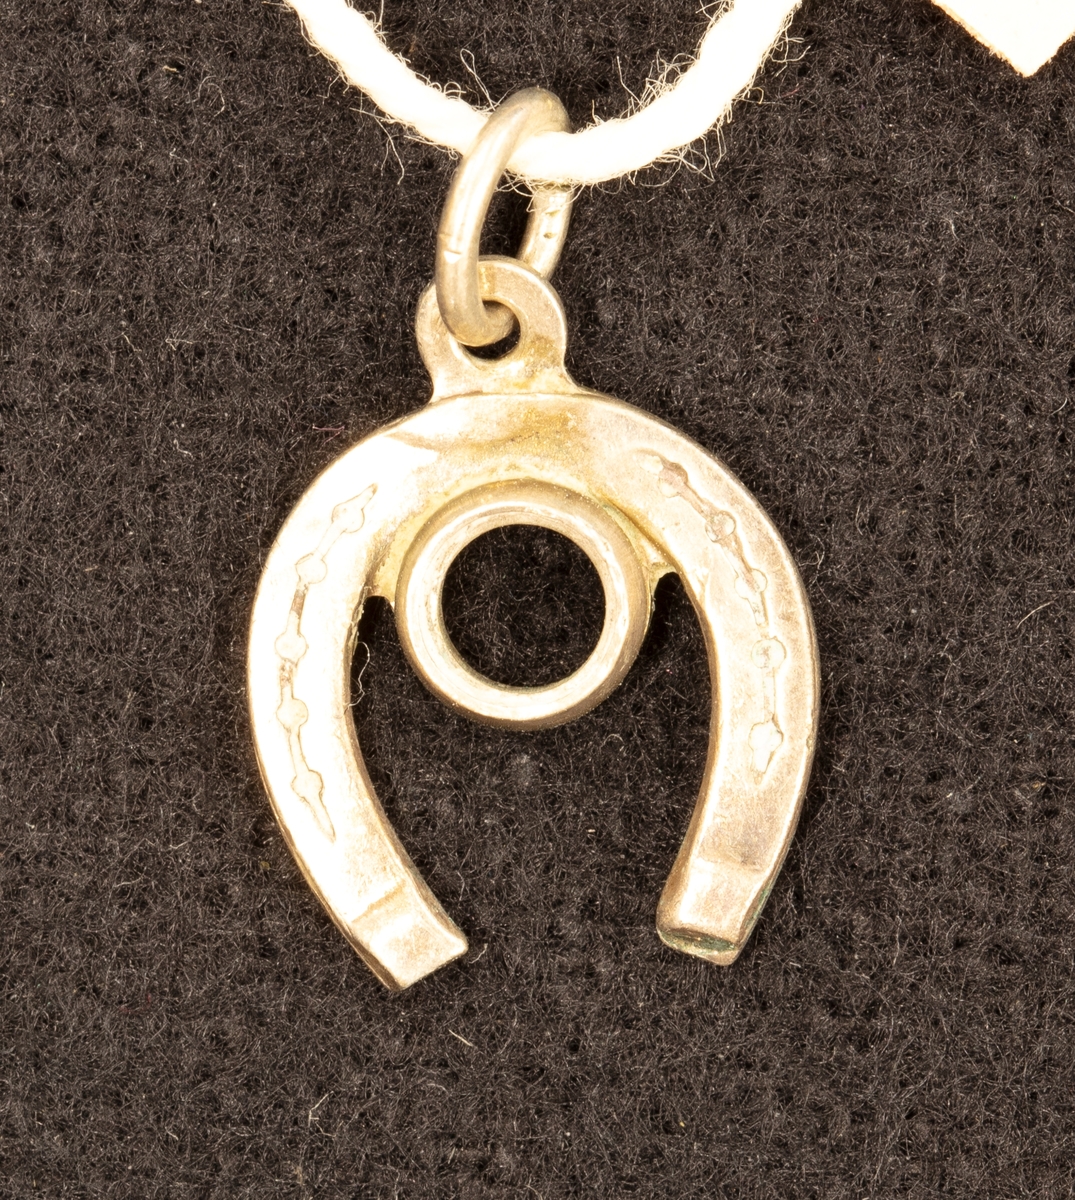 Hängberlock av silver i form av en hästsko med fäste för smyckesten. Diam. 1 cm.

Ingår i en samling smycken som givaren köpt på auktion eller hos antikhandlare.